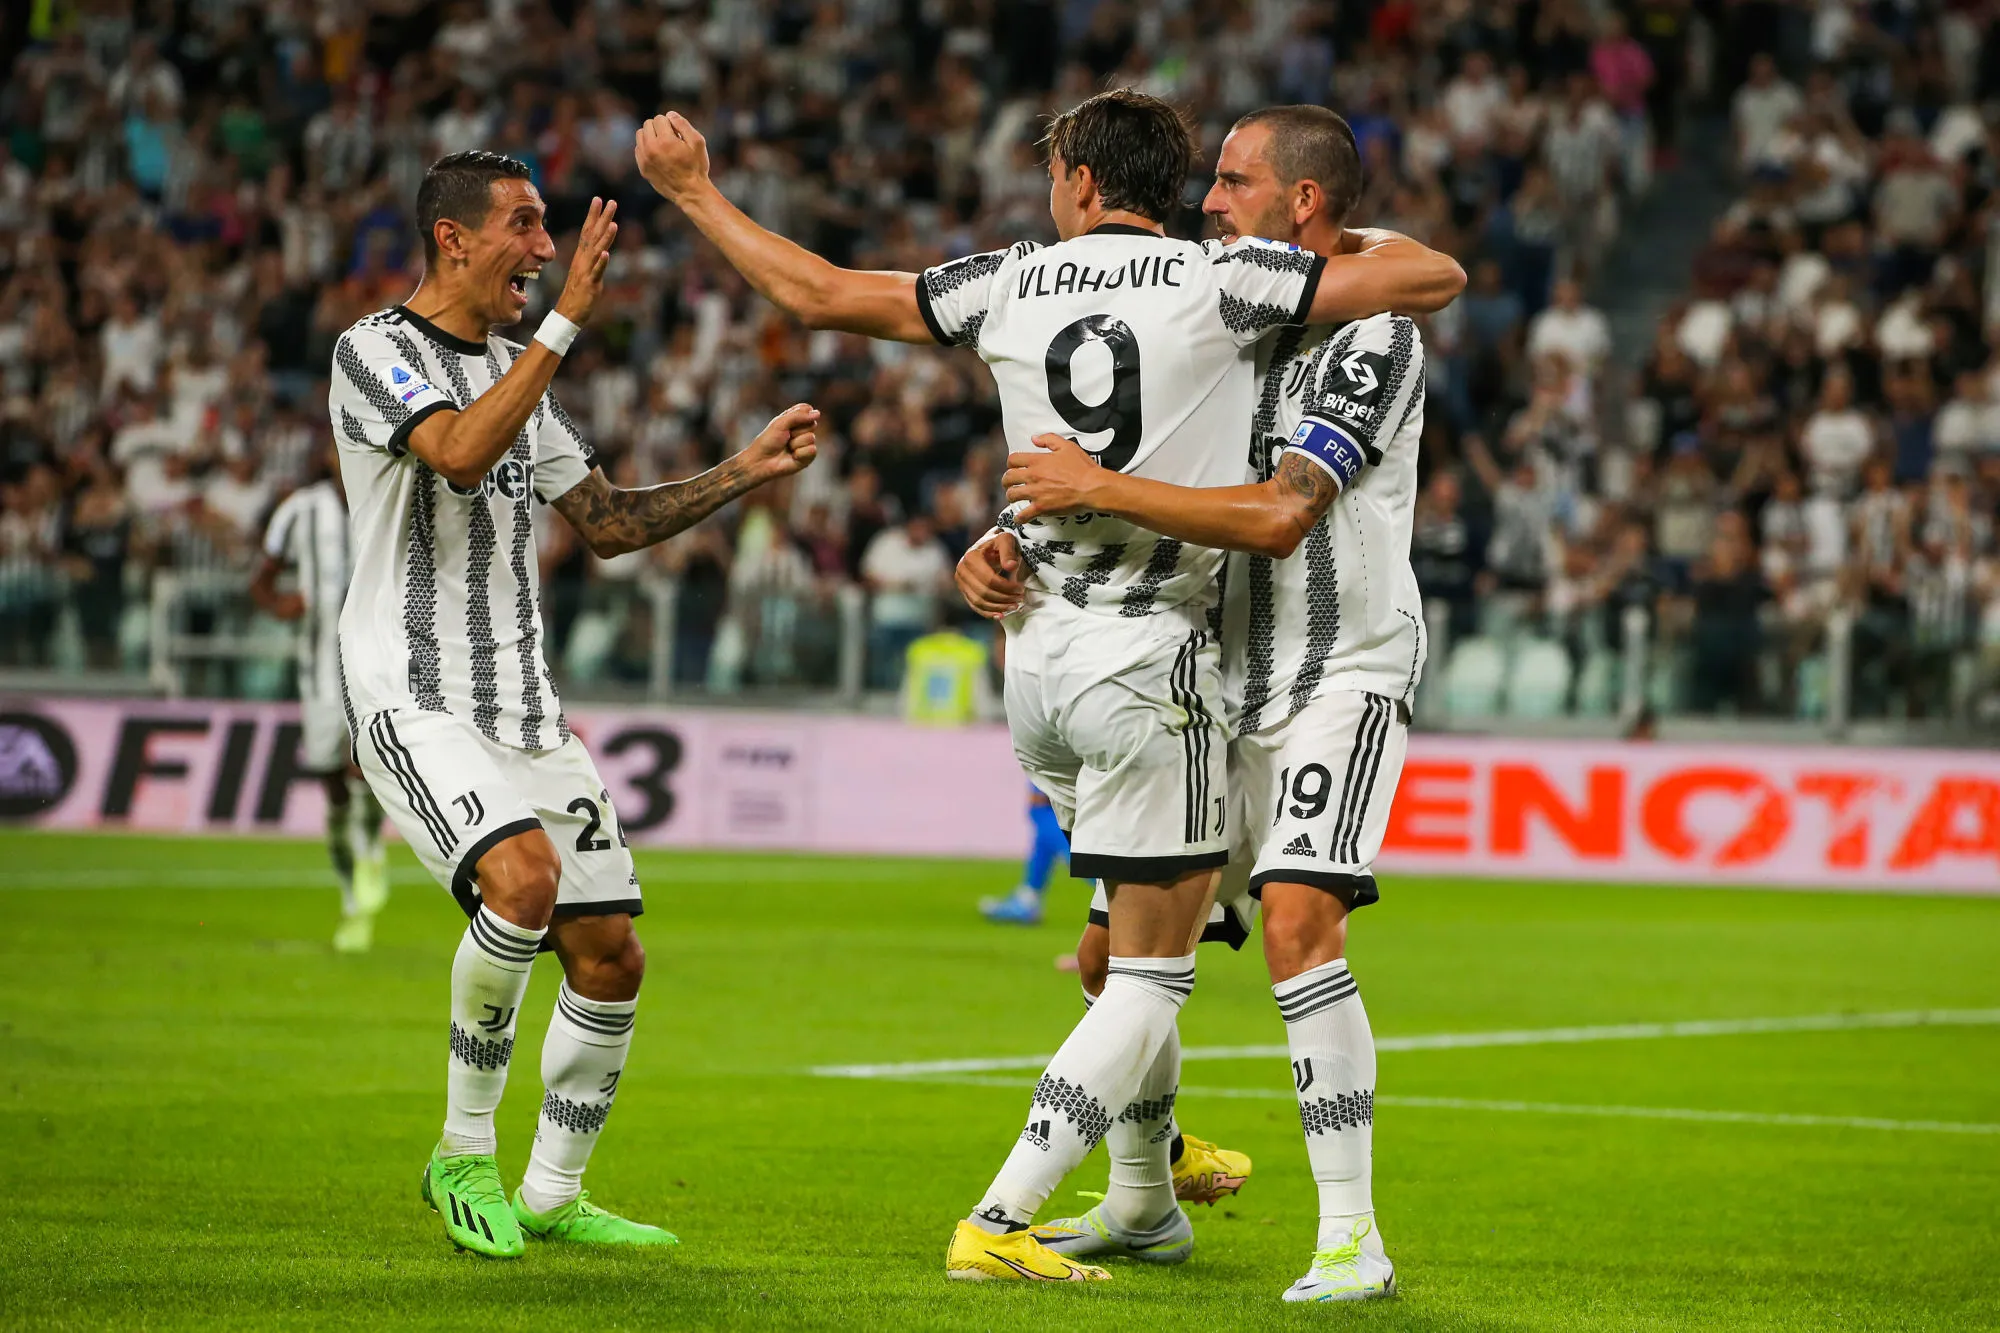 Pronostic Juventus Empoli : Analyse, cotes et prono du match de Serie A